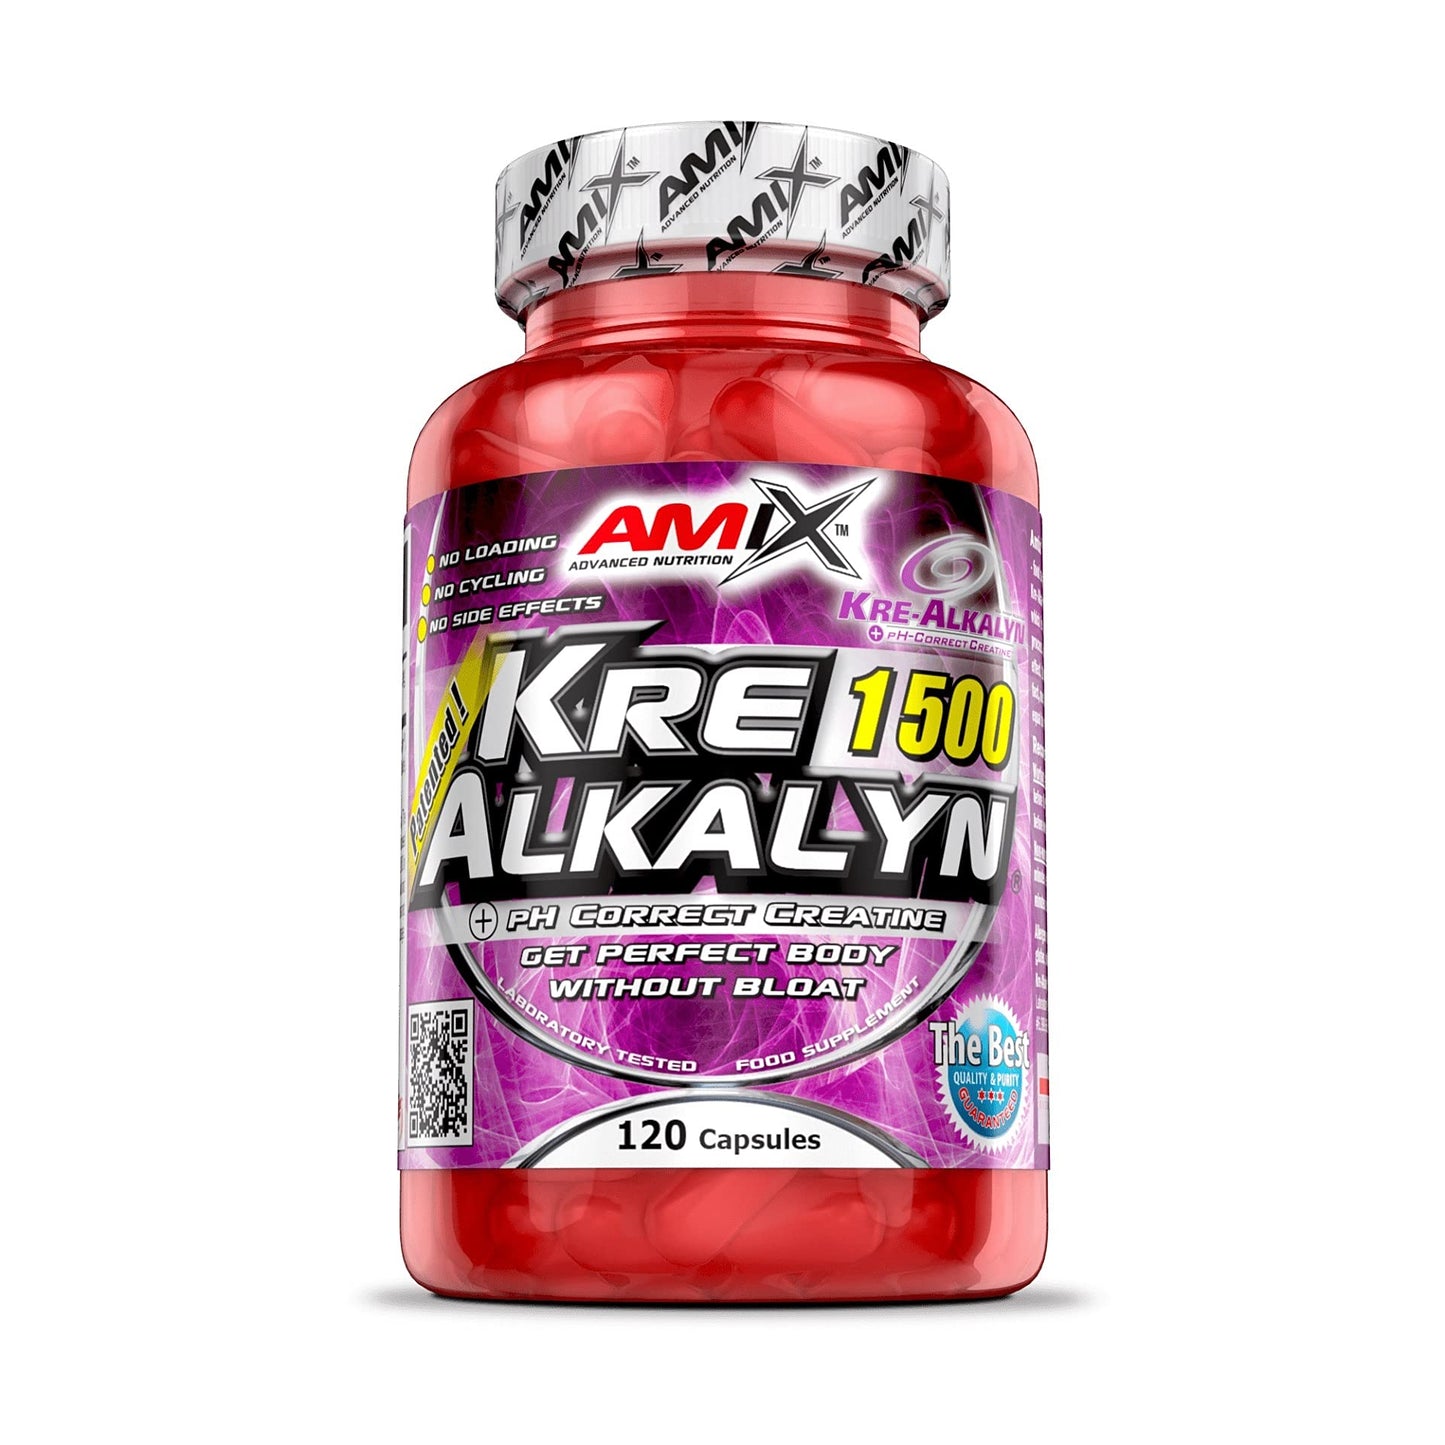 Kre-Alkalyn 120 + 30 cápsulas gratis